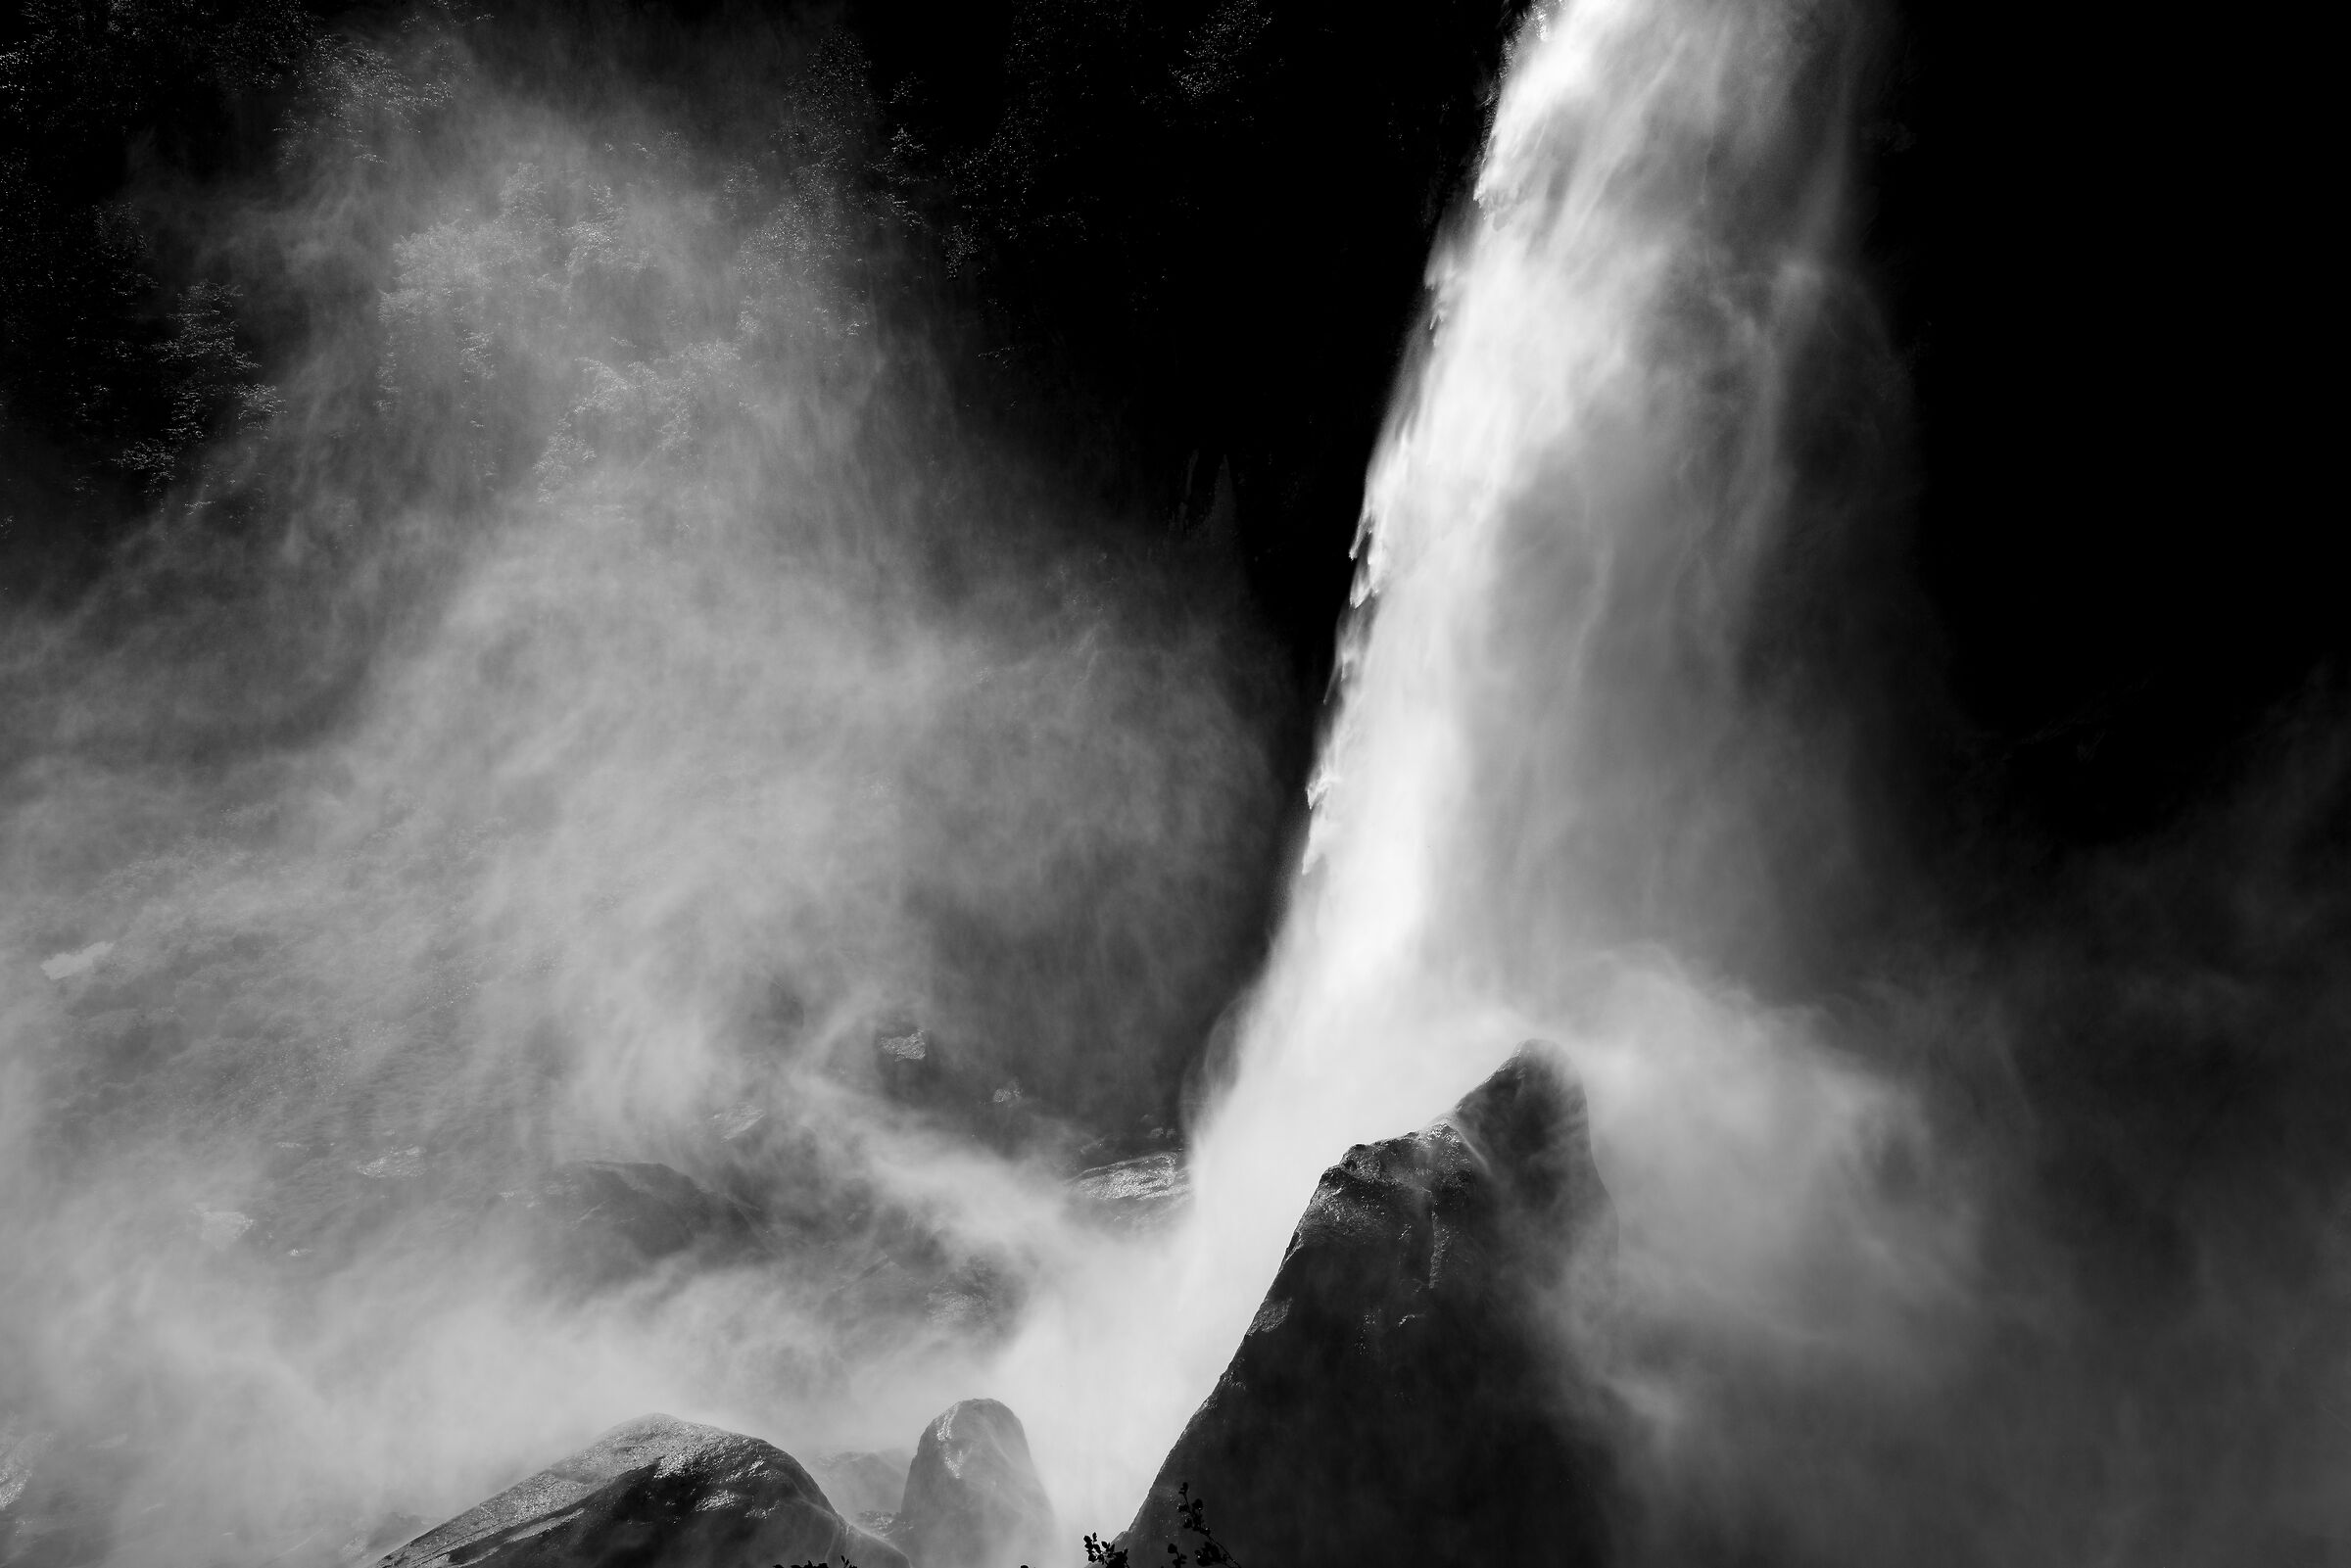 Waterfall of Foroglio...